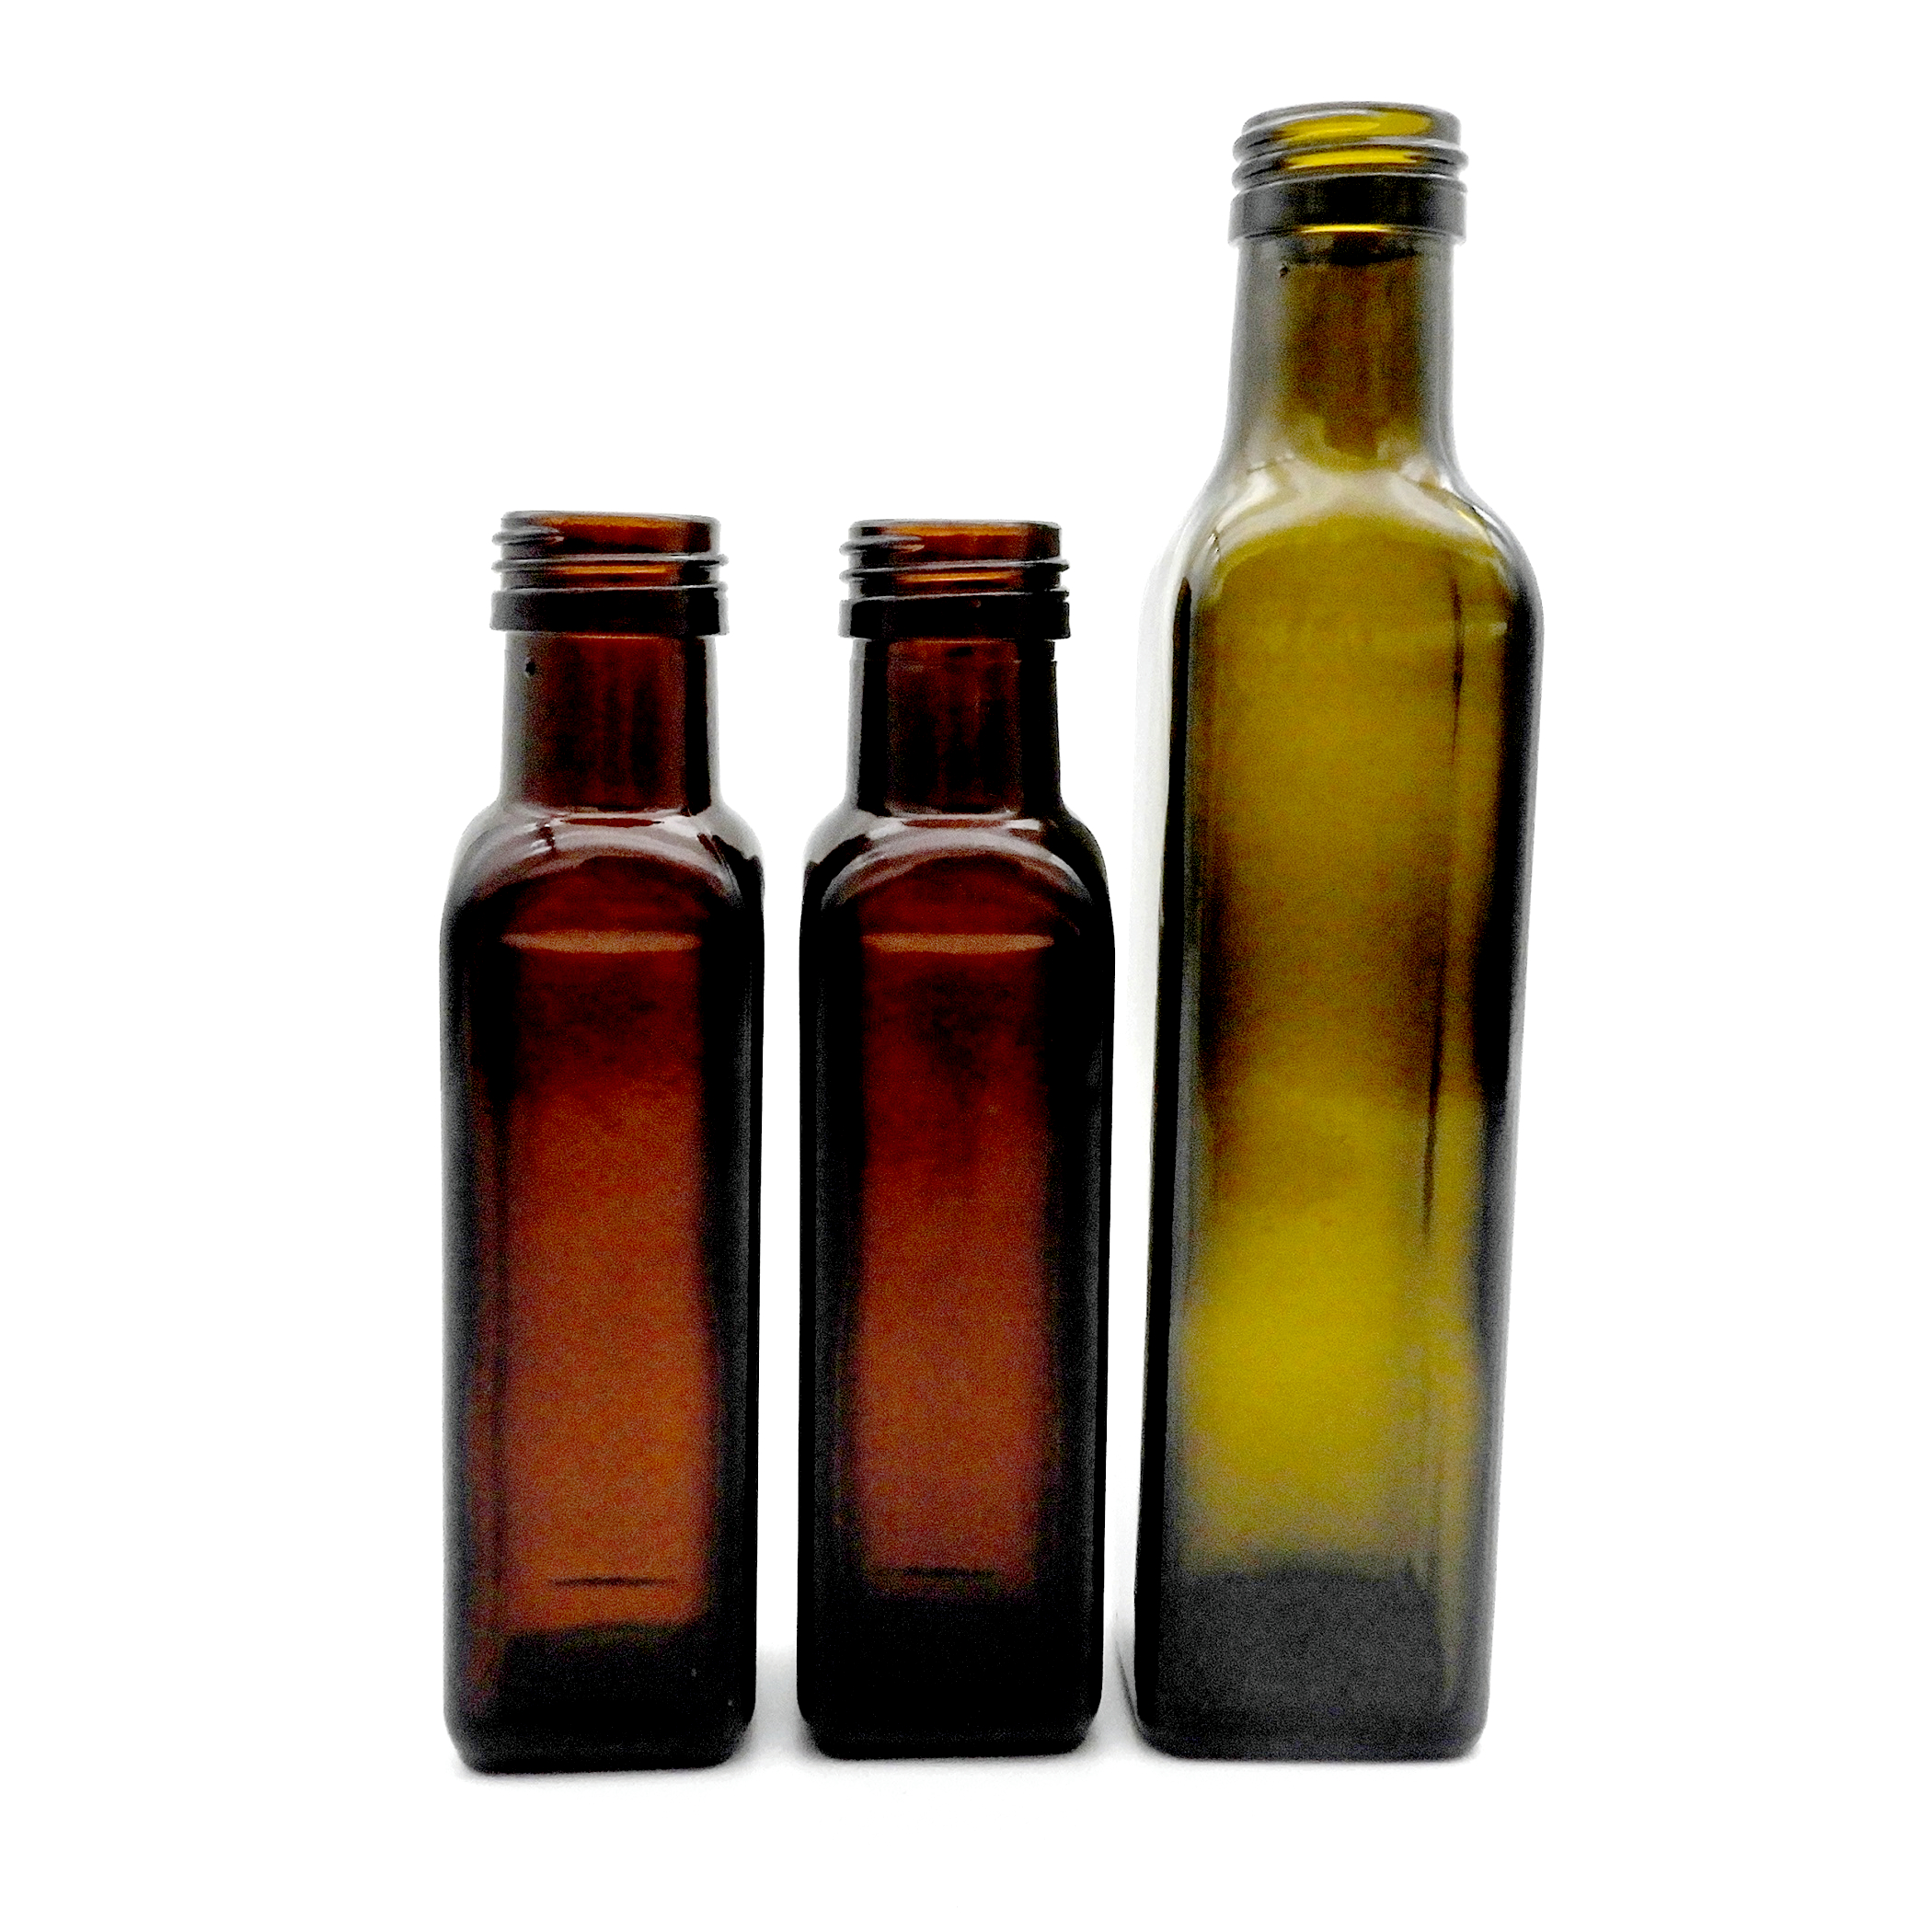 Botol Minyak Zaitun Persegi 100ml (4)